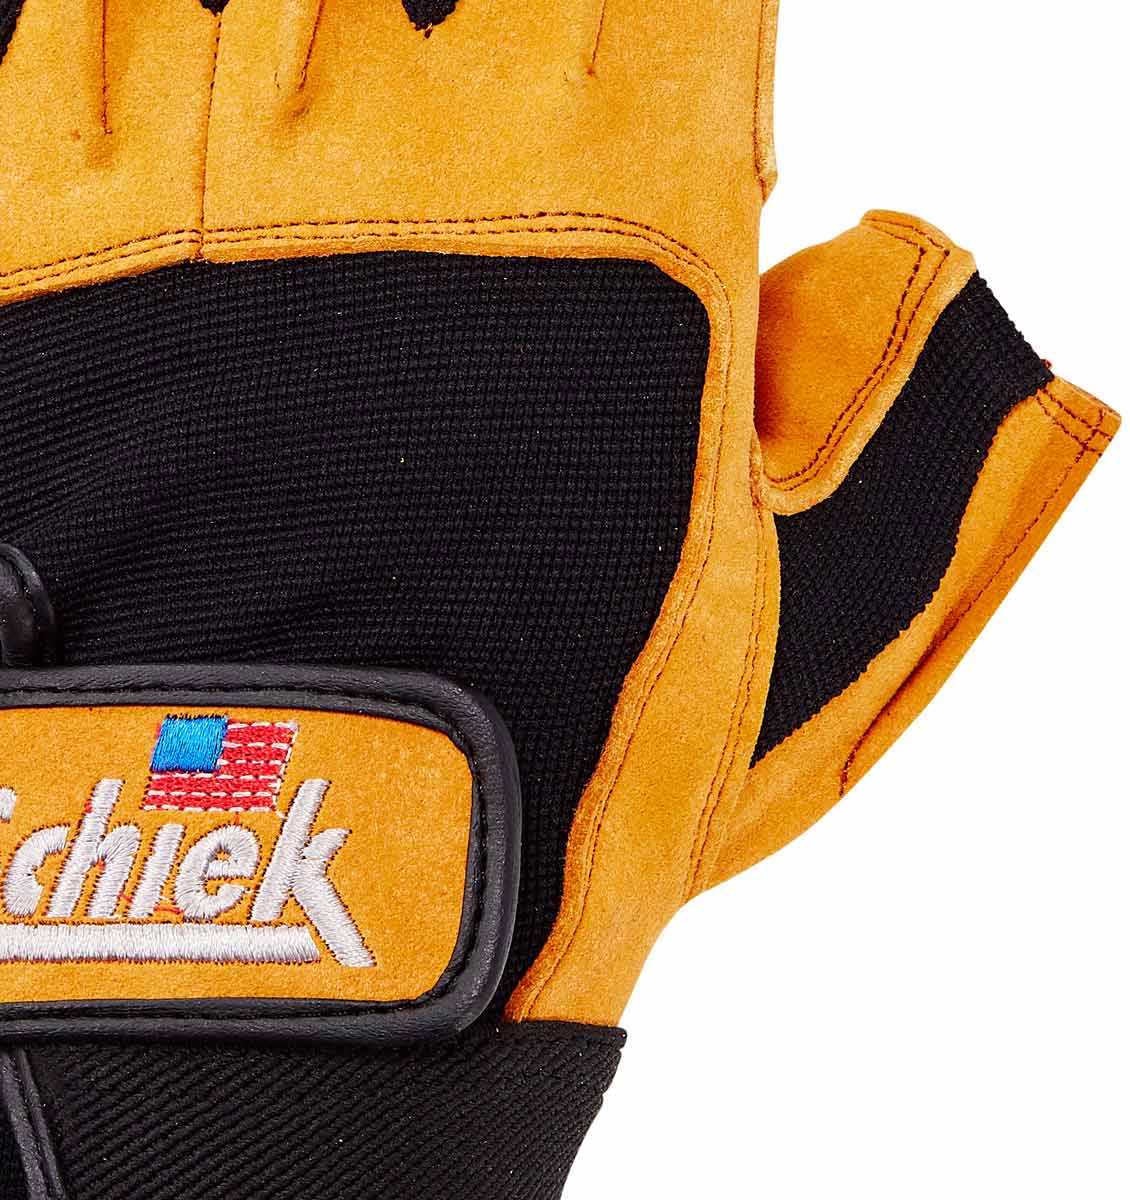 Schiek Lifting Gloves Model 540 — Western Fitness Equipment